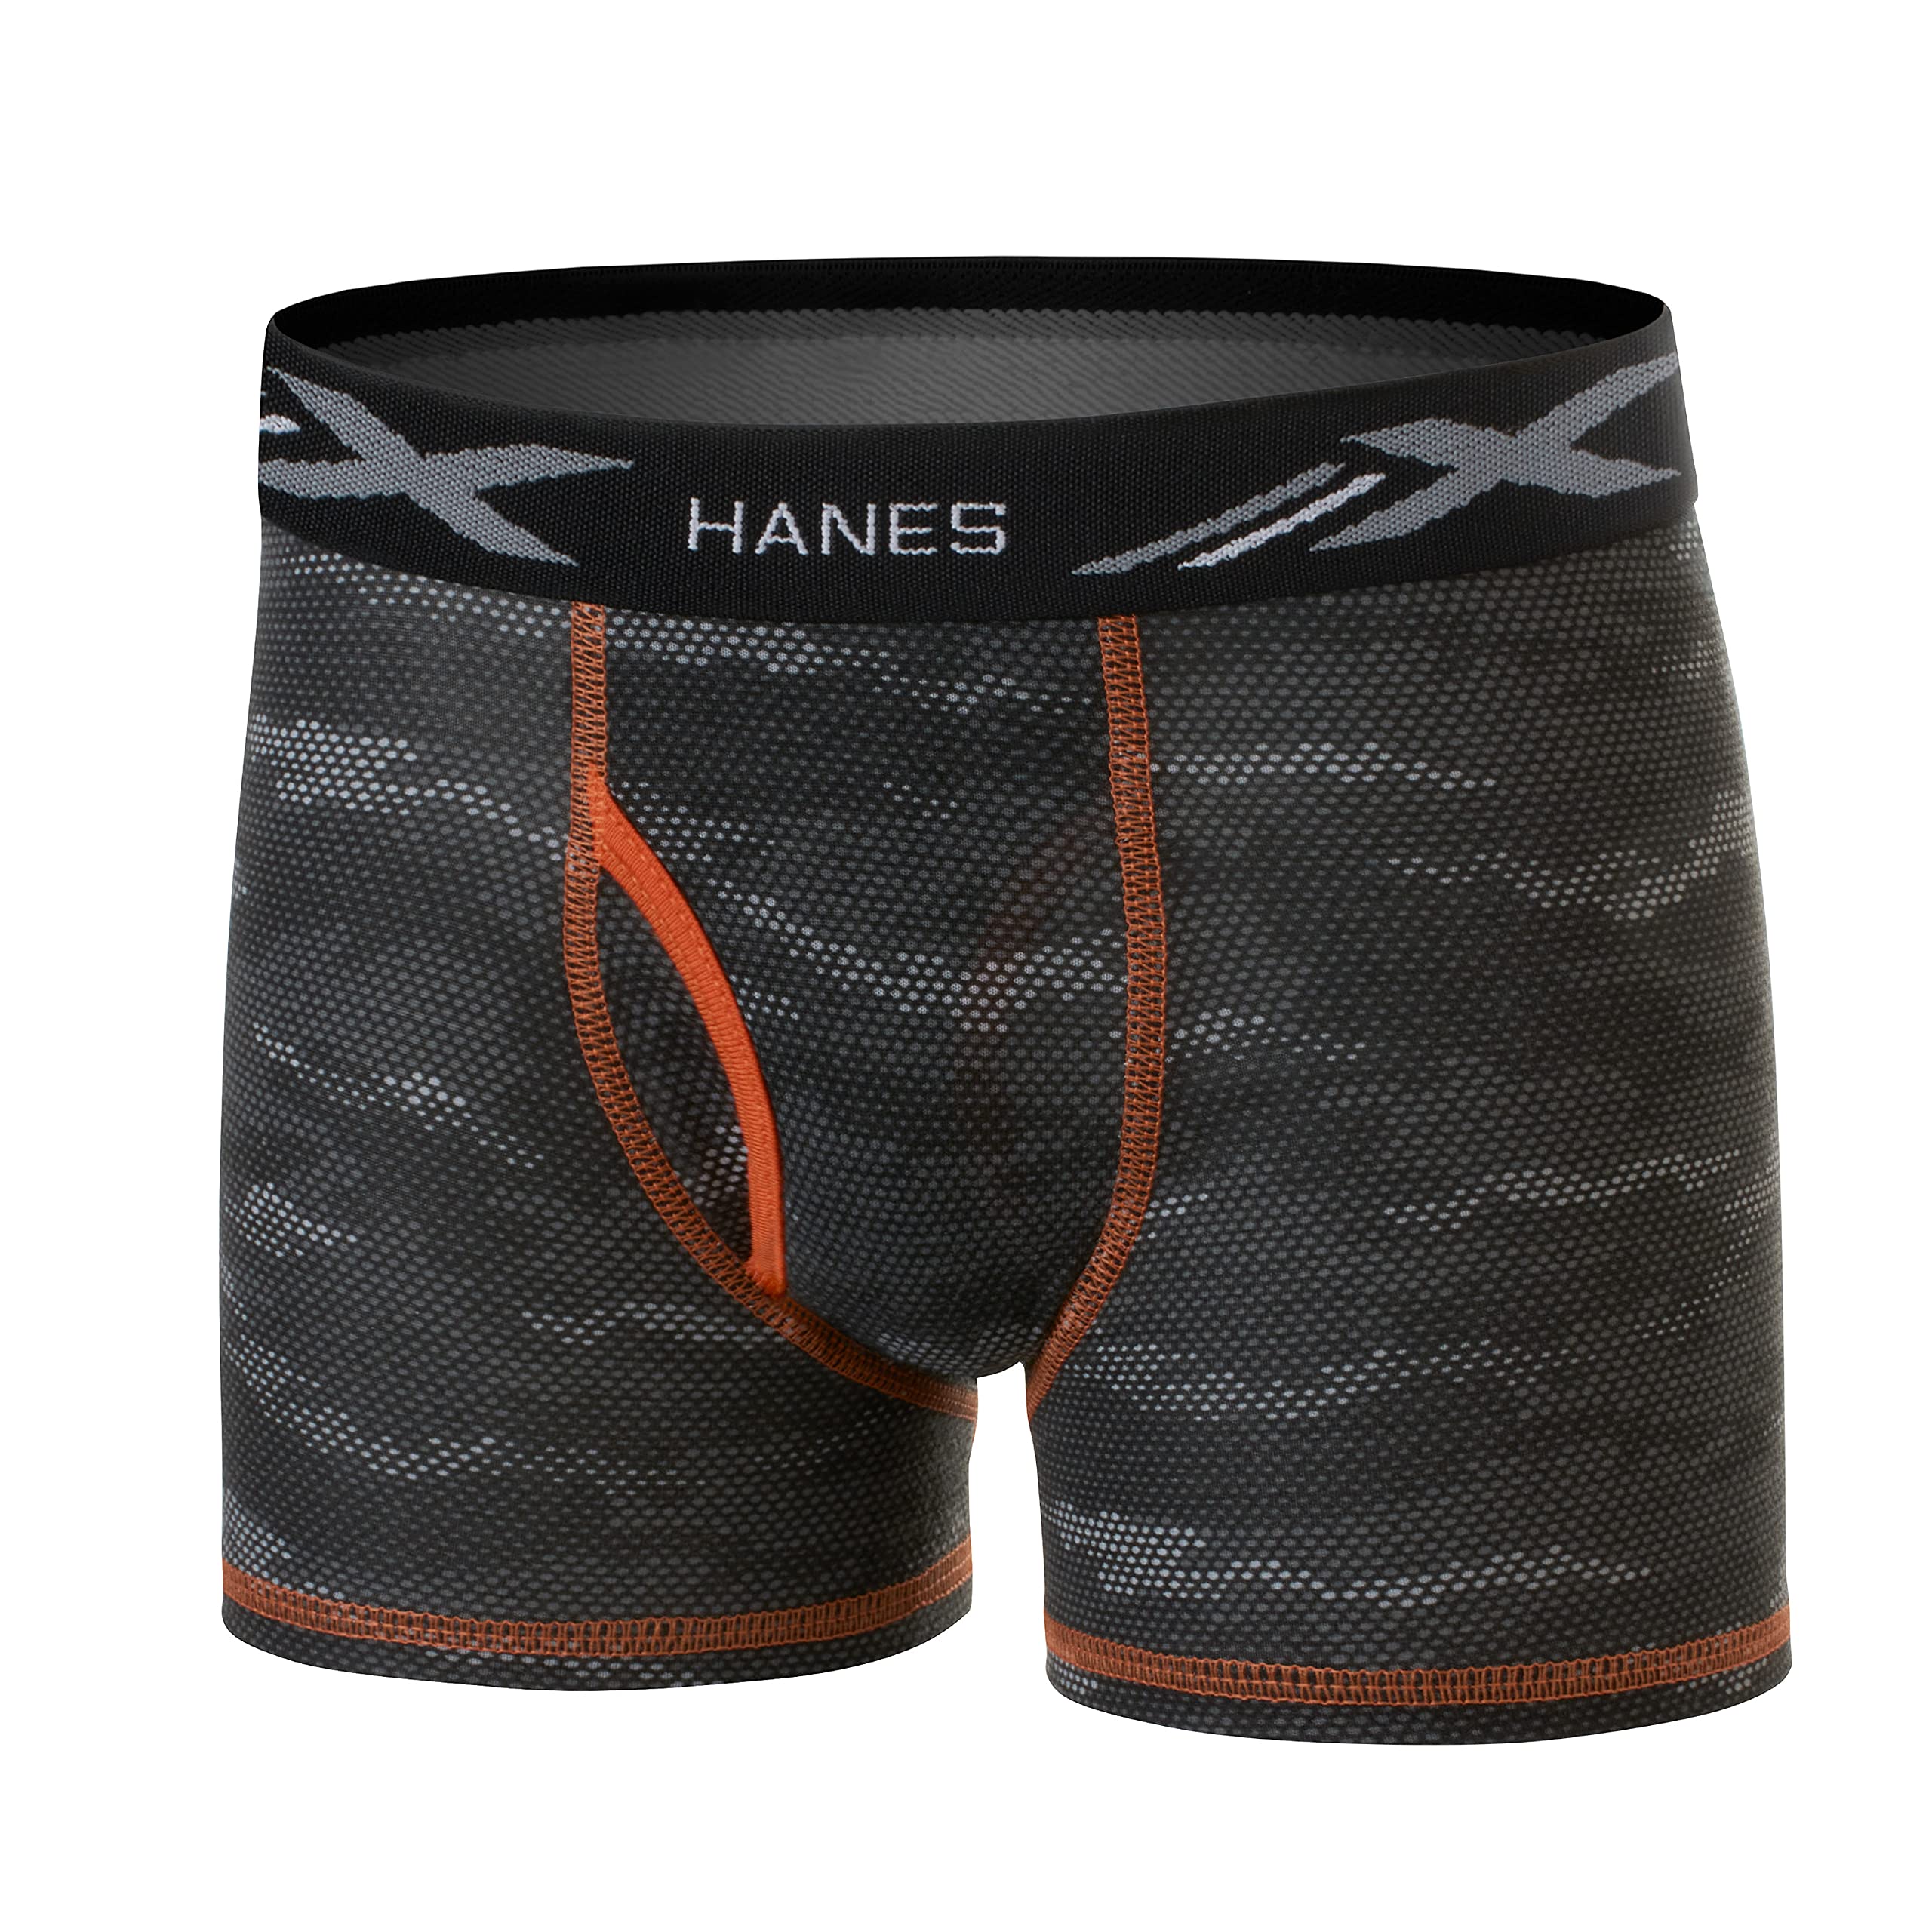 Hanes Boys' Underwear, X-Temp Moisture-Wicking Boxer Briefs, 6-Pack